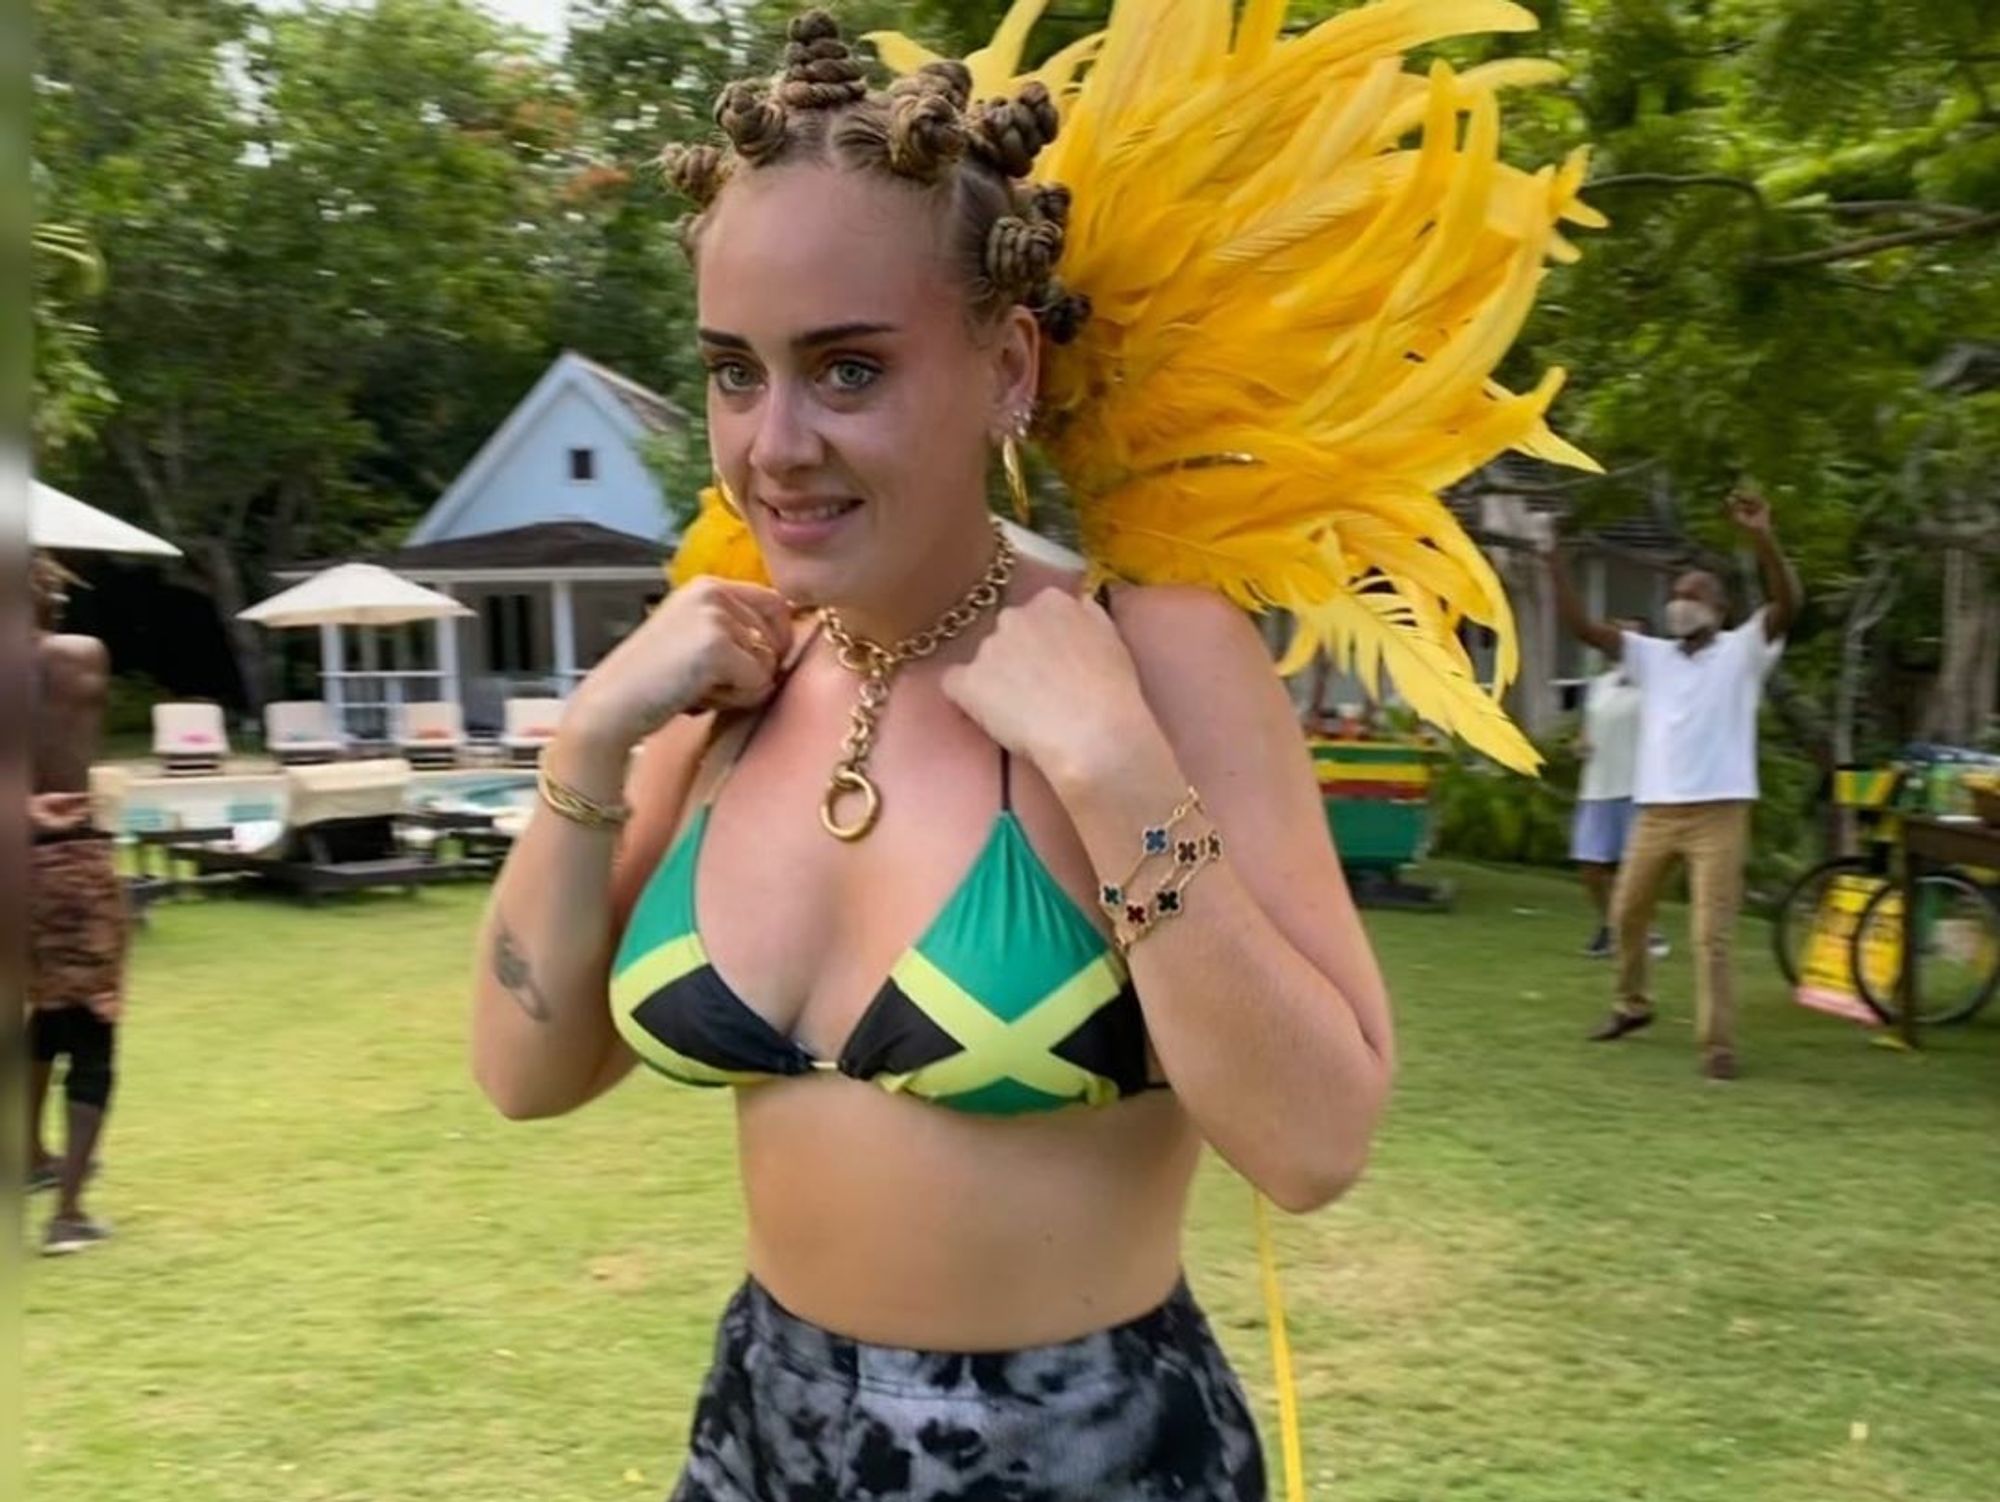 Adele in Jamaican bikini, yellow feathers and Bantu knot hairstyle.